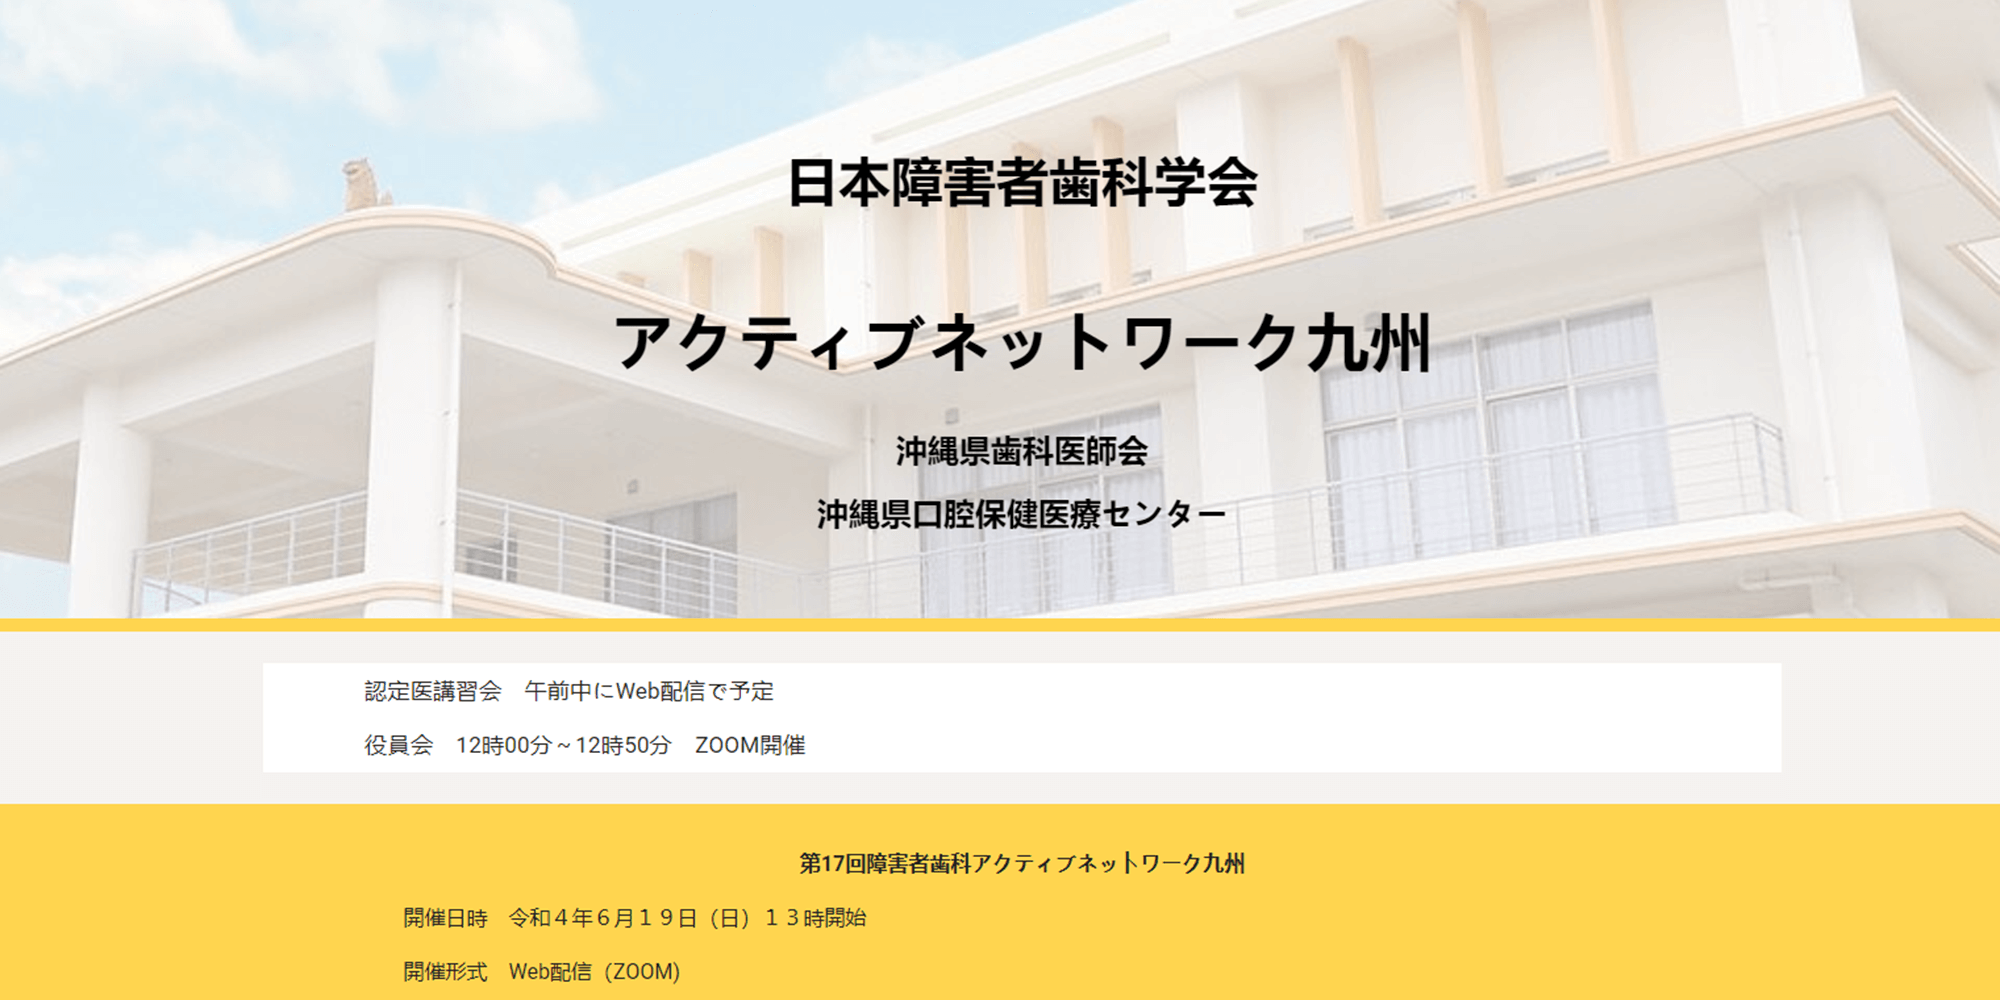 日本障害者歯科学会 アクティブネットワーク九州